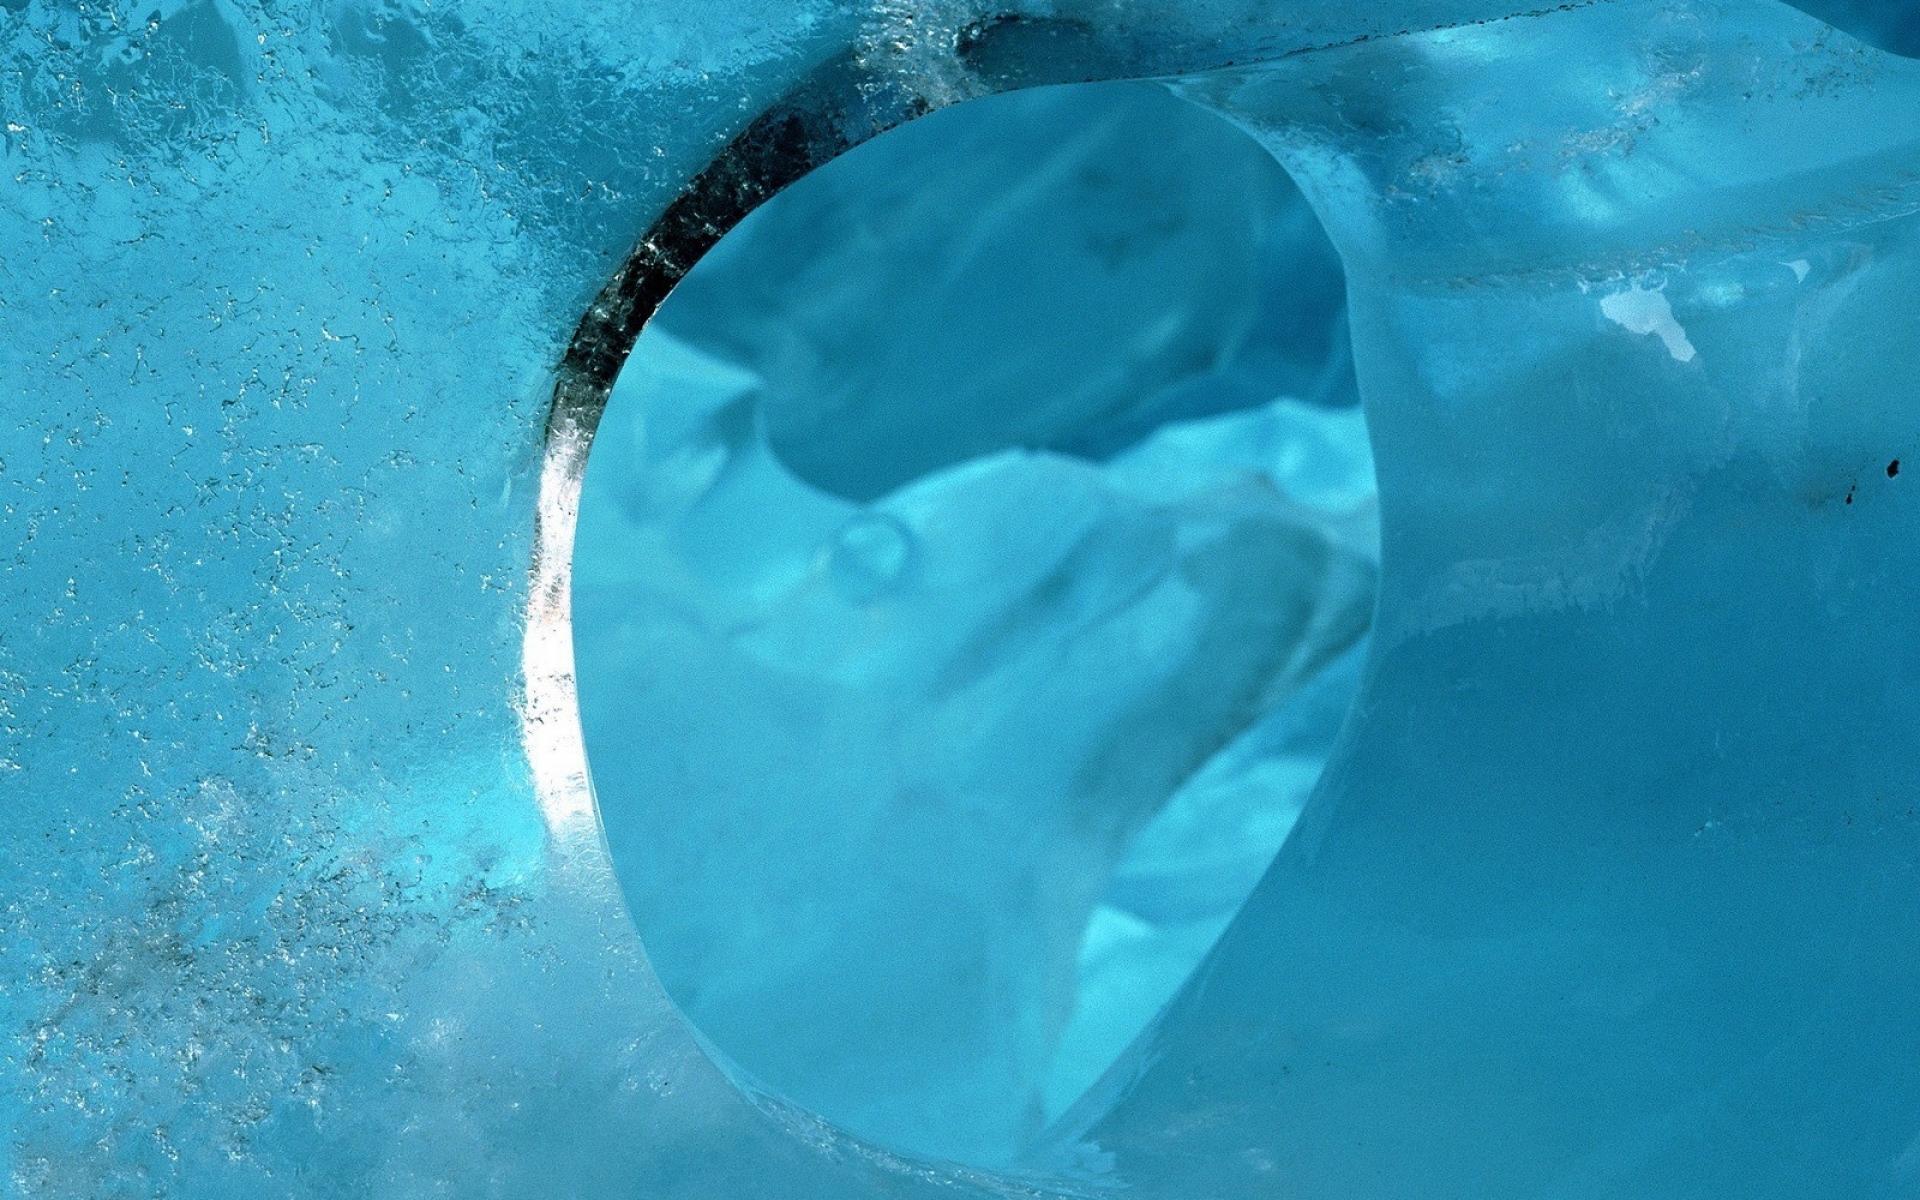 Трещины воды. Замерзшая вода. Лёд. Вода со льдом. Ювелирные украшения во льду.